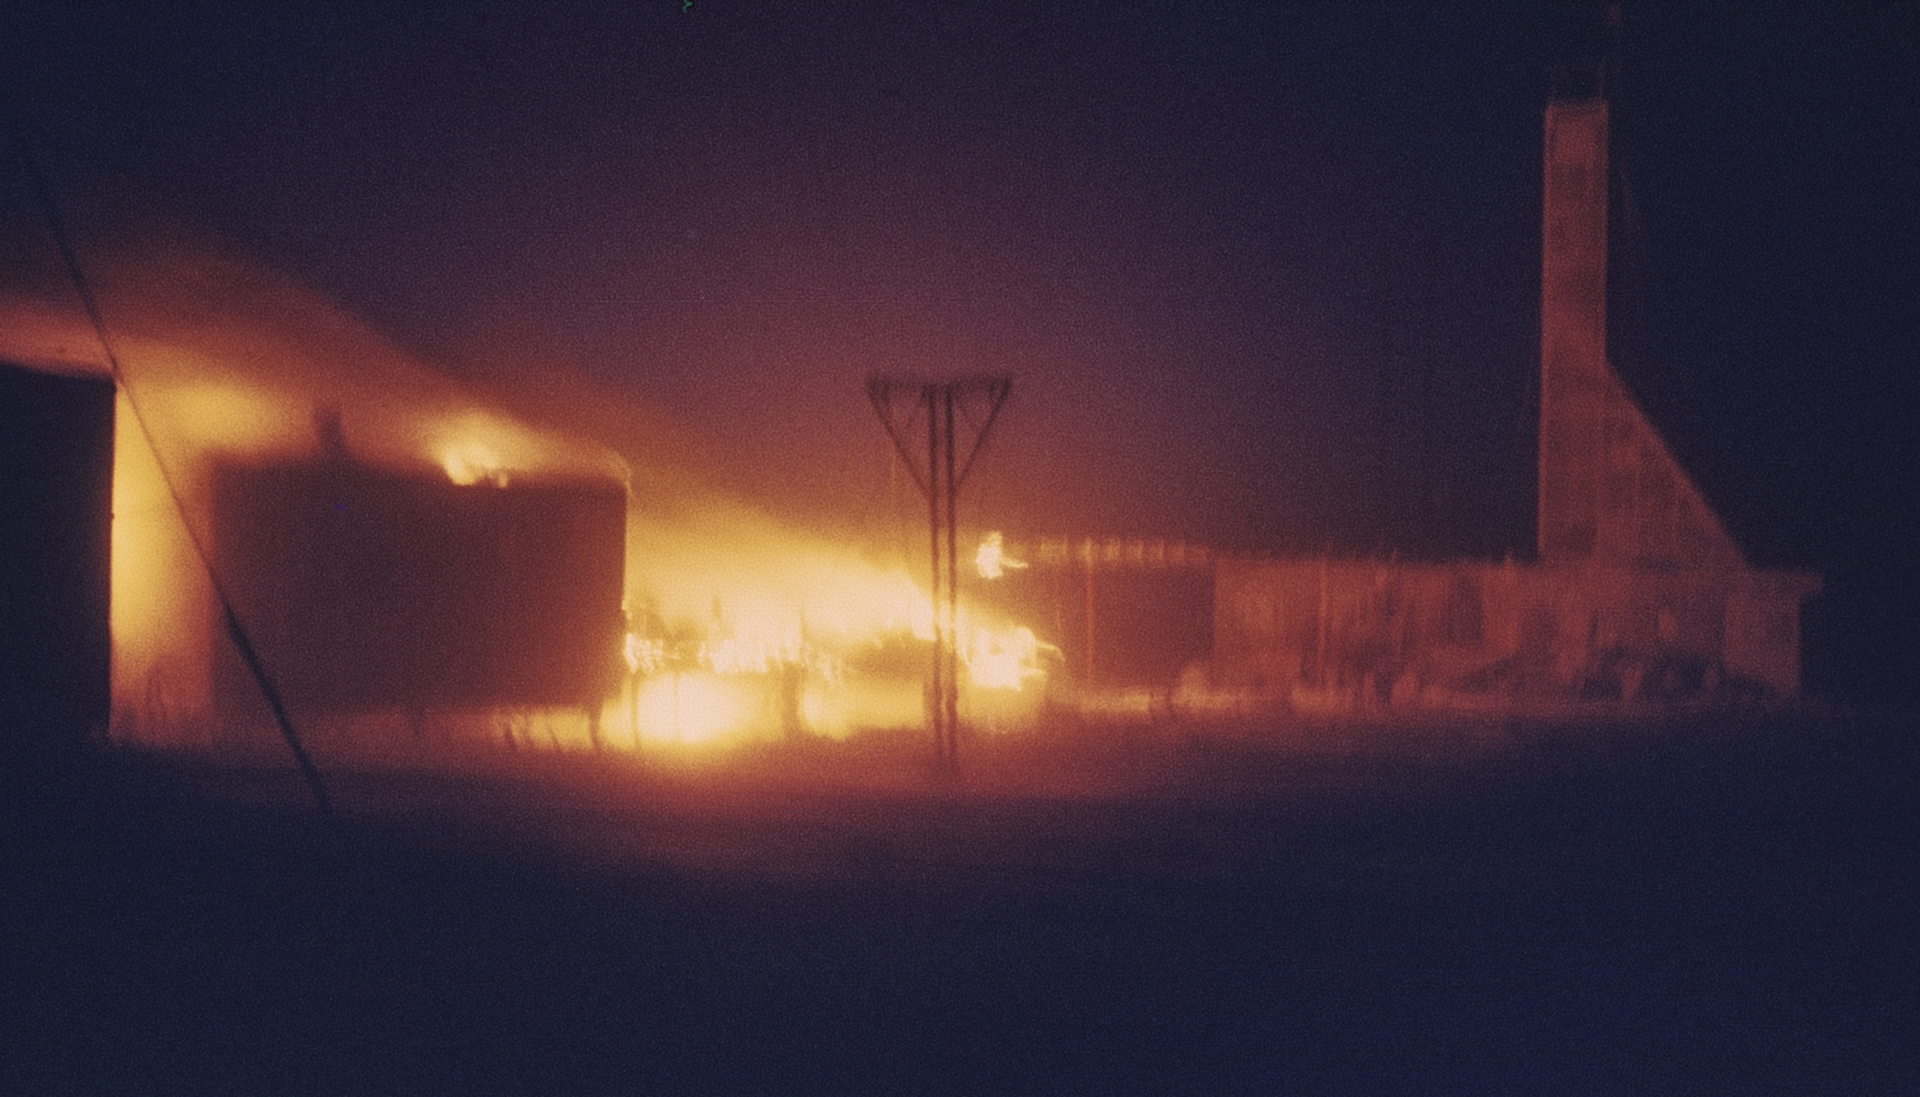 Пожар на станции Восток в Антарктиде в 1982 году. Восток Антарктида 1982. Пожар на станции Мирный в Антарктиде. Станция Восток Антарктида 1982. Сгорает дизель